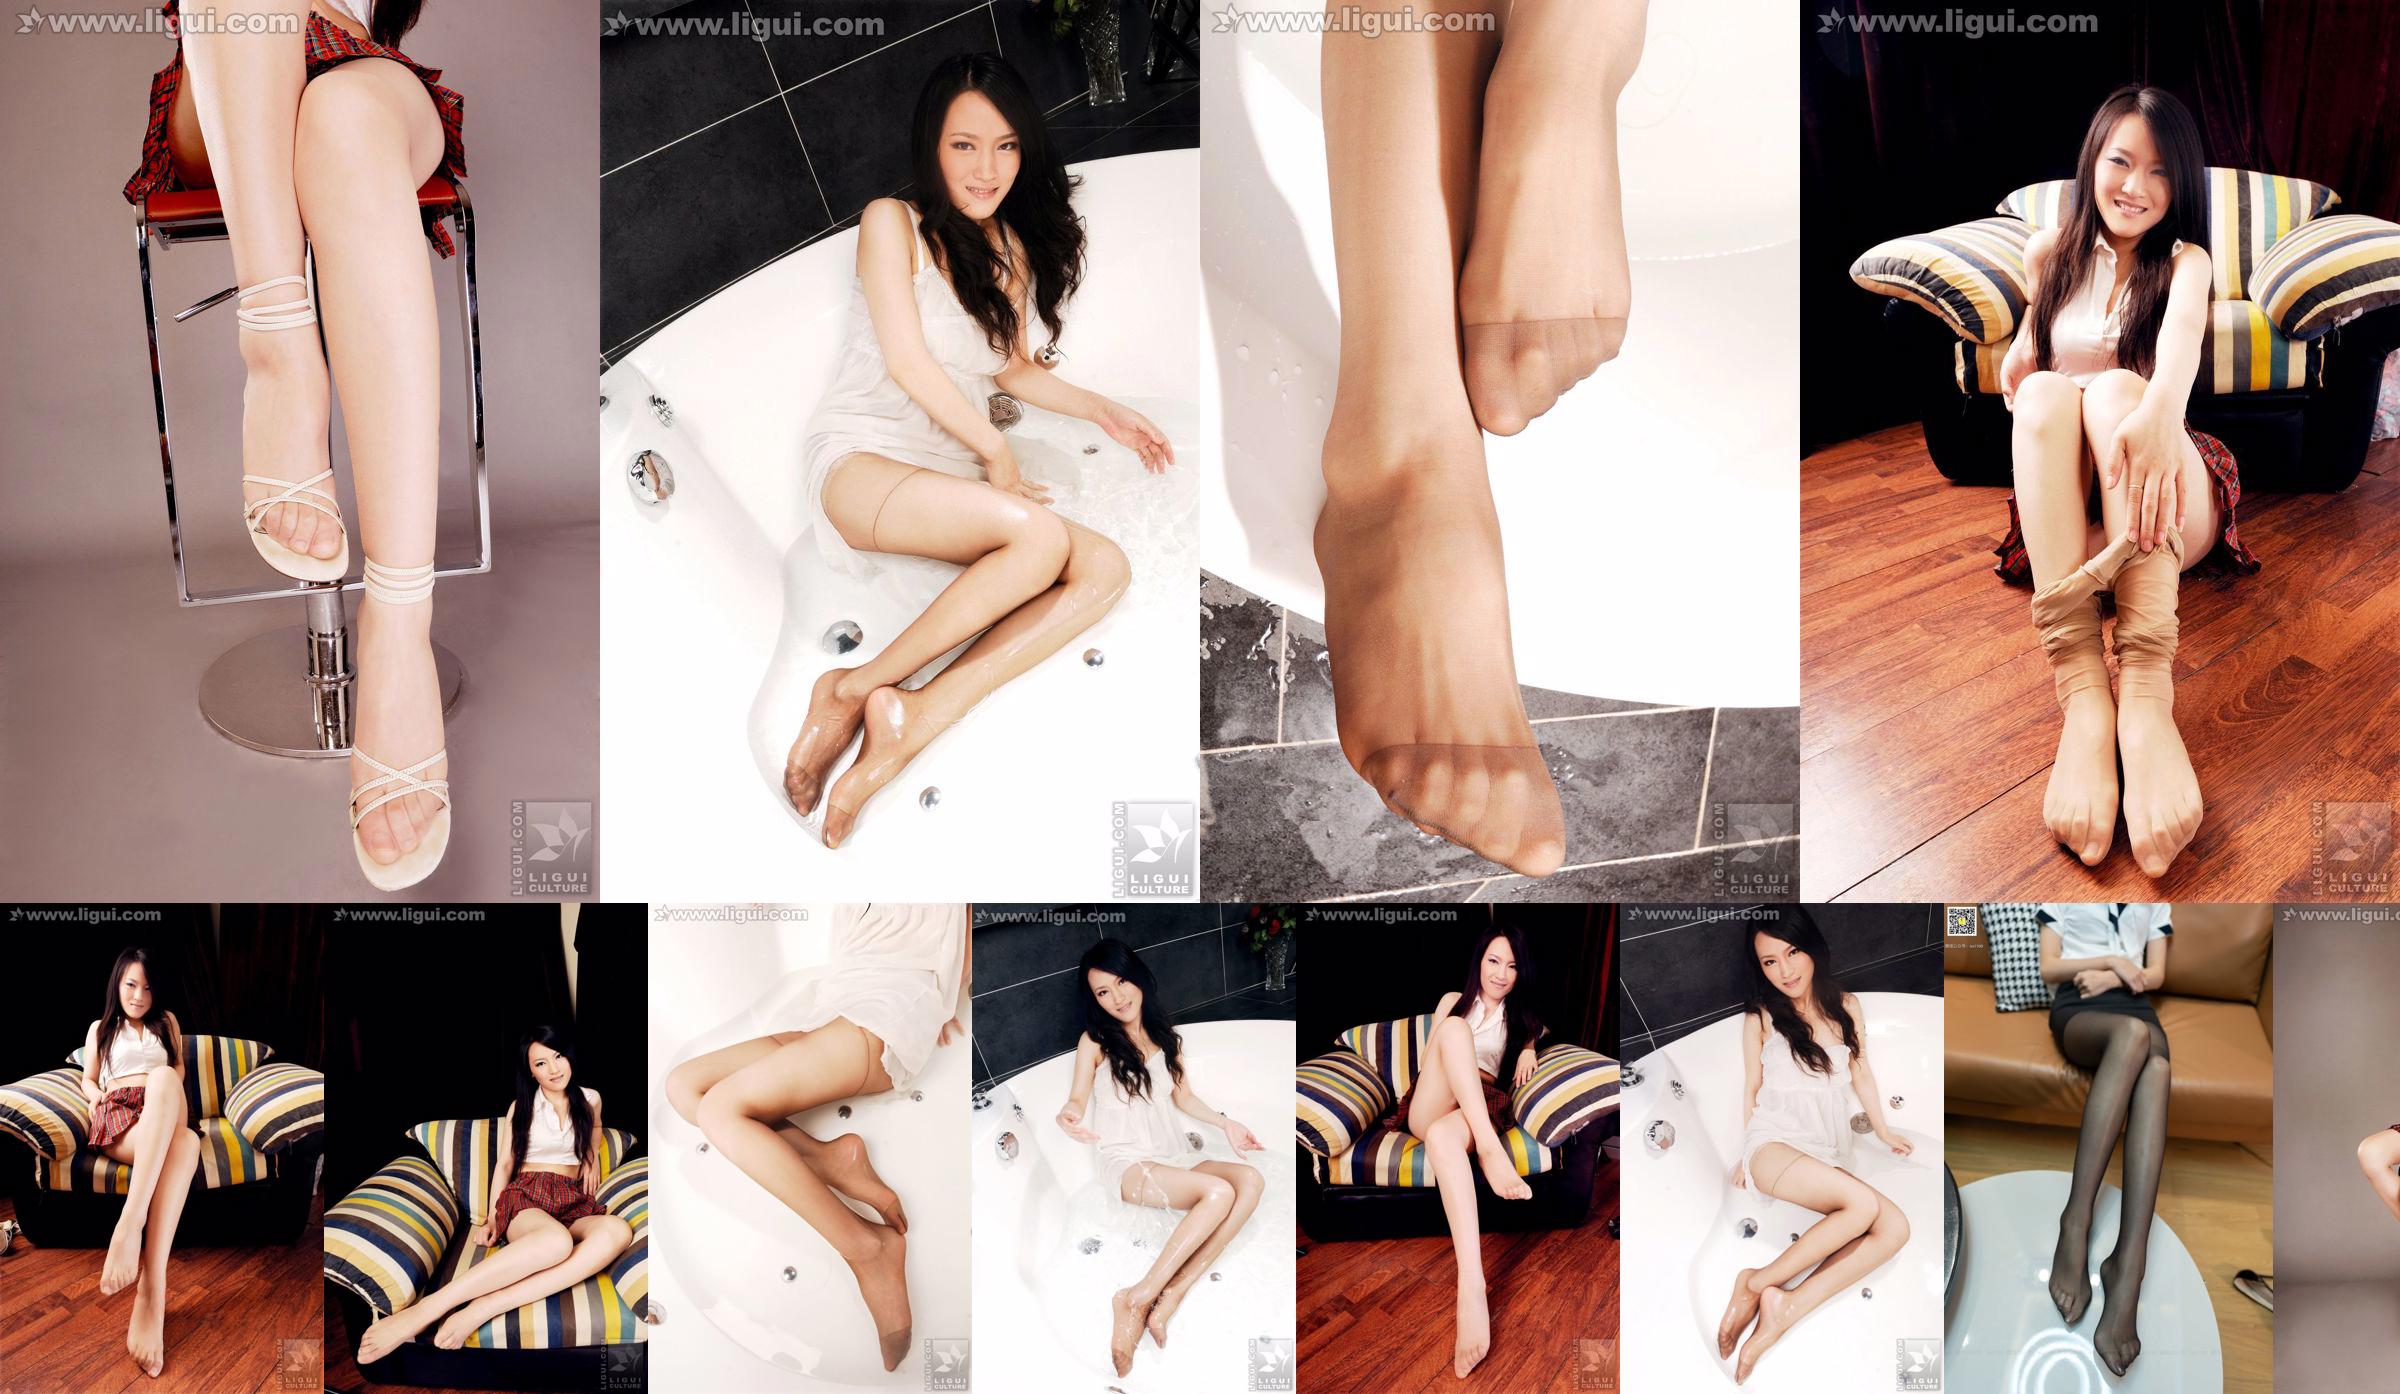 Modelo Wen Ting "Pies puros y hermosos" [丽 柜 LiGui] Imagen fotográfica de pie de seda No.19f976 Página 7